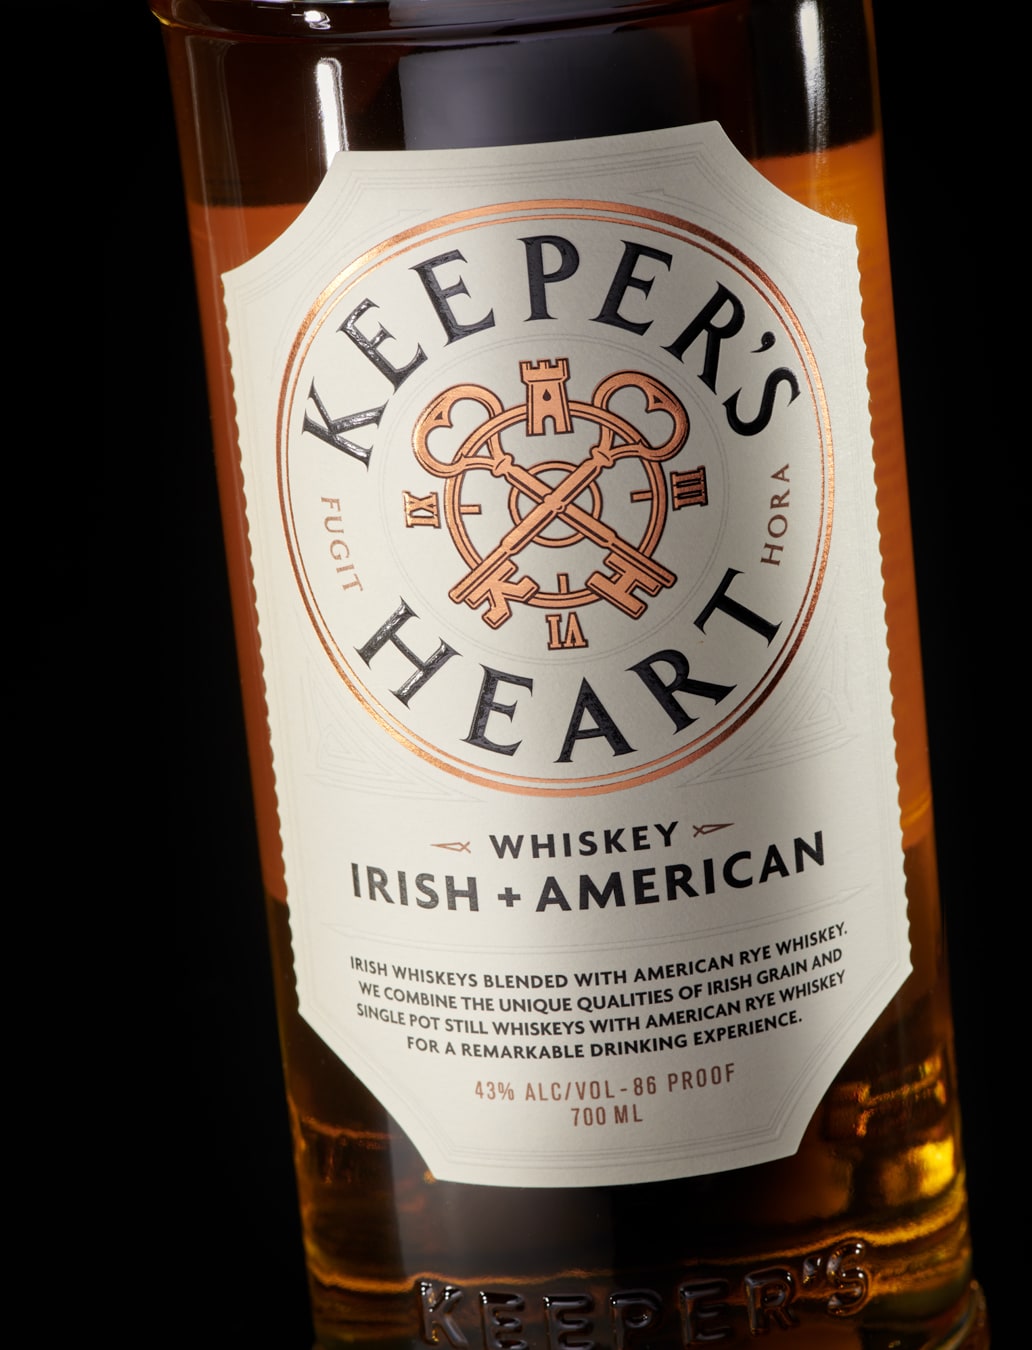 Keeper’s Heart custom whiskey bottle detail